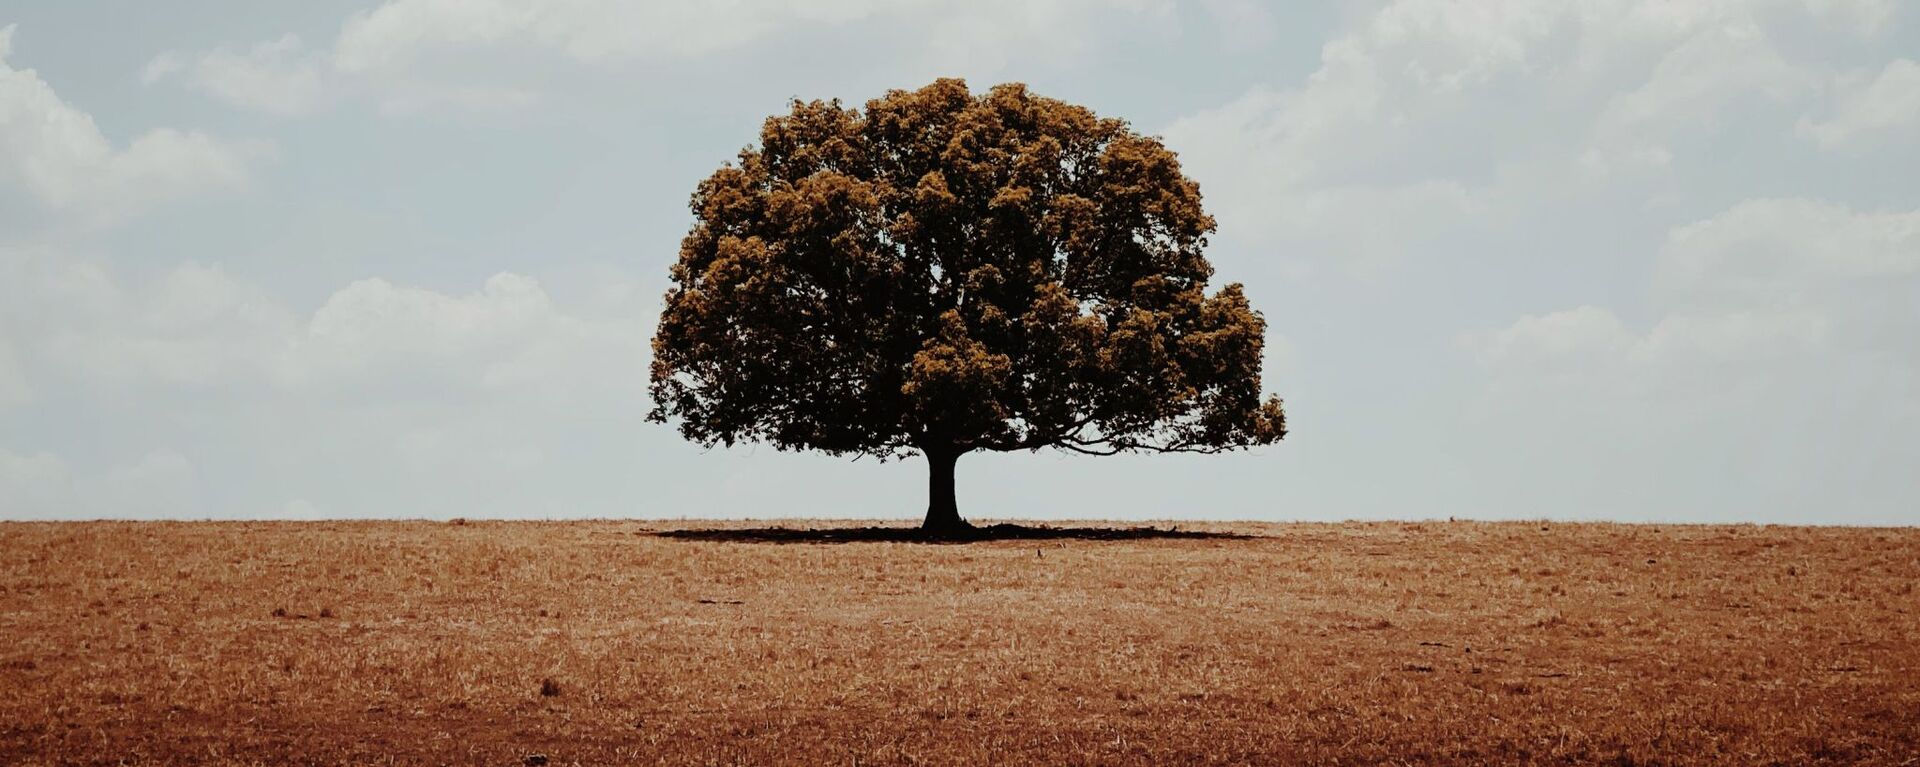 صورة بعنوان وحيد، للمصور الأسترالي غلين هومان، الحائزة على الجائزة الرئيسية في فئة التصوير الأشجار في جوائز مسابقة مصور العام في التصوير بواسطة الهاتف المحمول أيفون لعام 2020 - سبوتنيك عربي, 1920, 25.10.2021